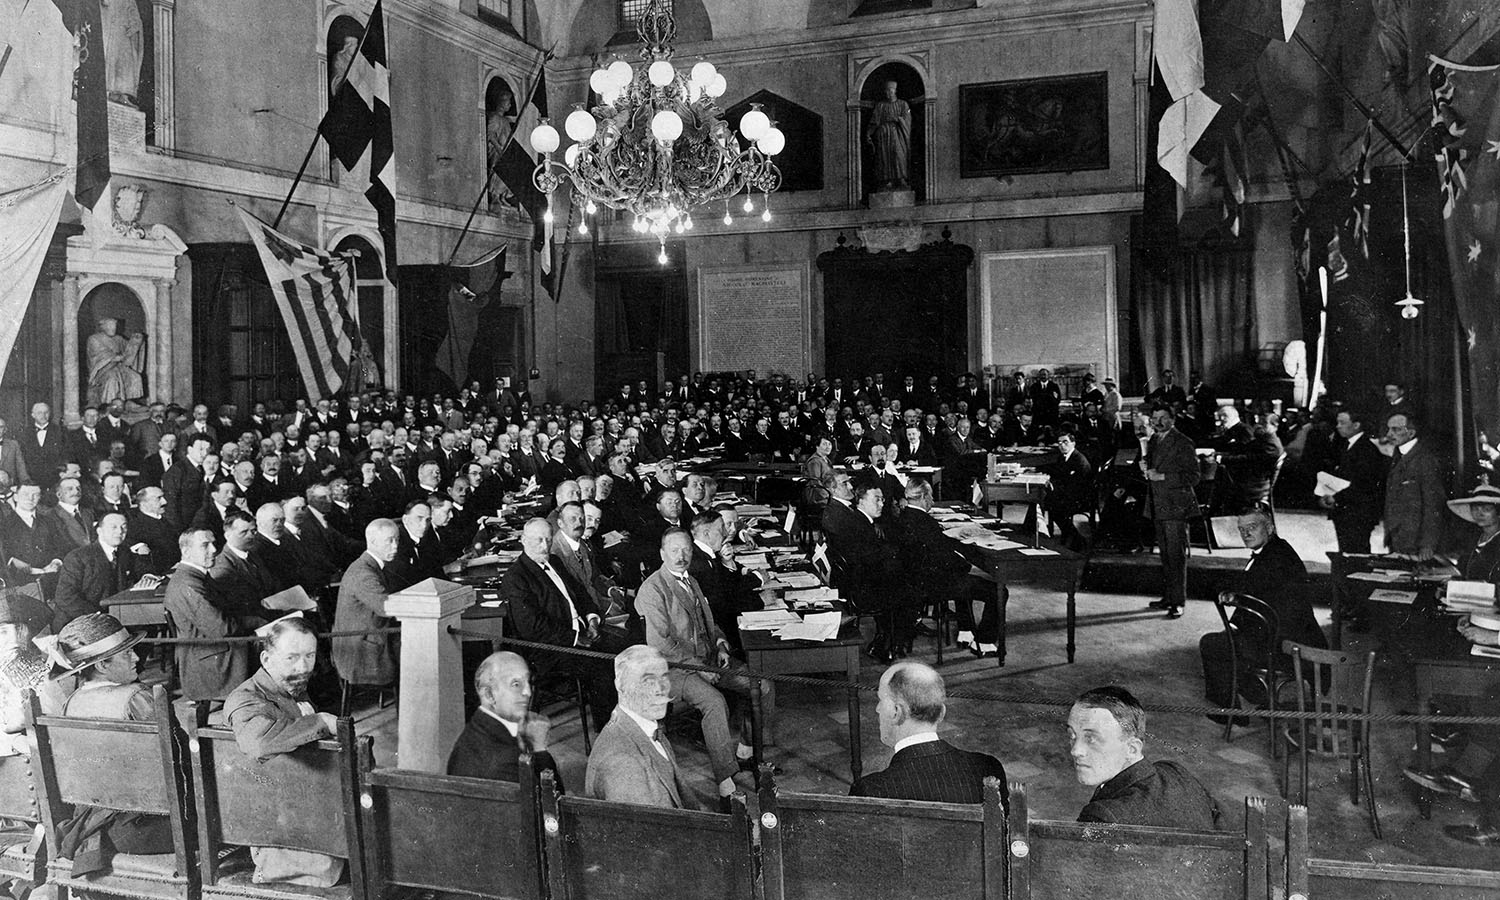 2° Conferenza internazionale del lavoro, Seduta d’apertura svoltasi presso Palazzo San Giorgio a Genova sotto la presidenza del Barone Mayor des Planches, Archivi storici OIL, 1920.